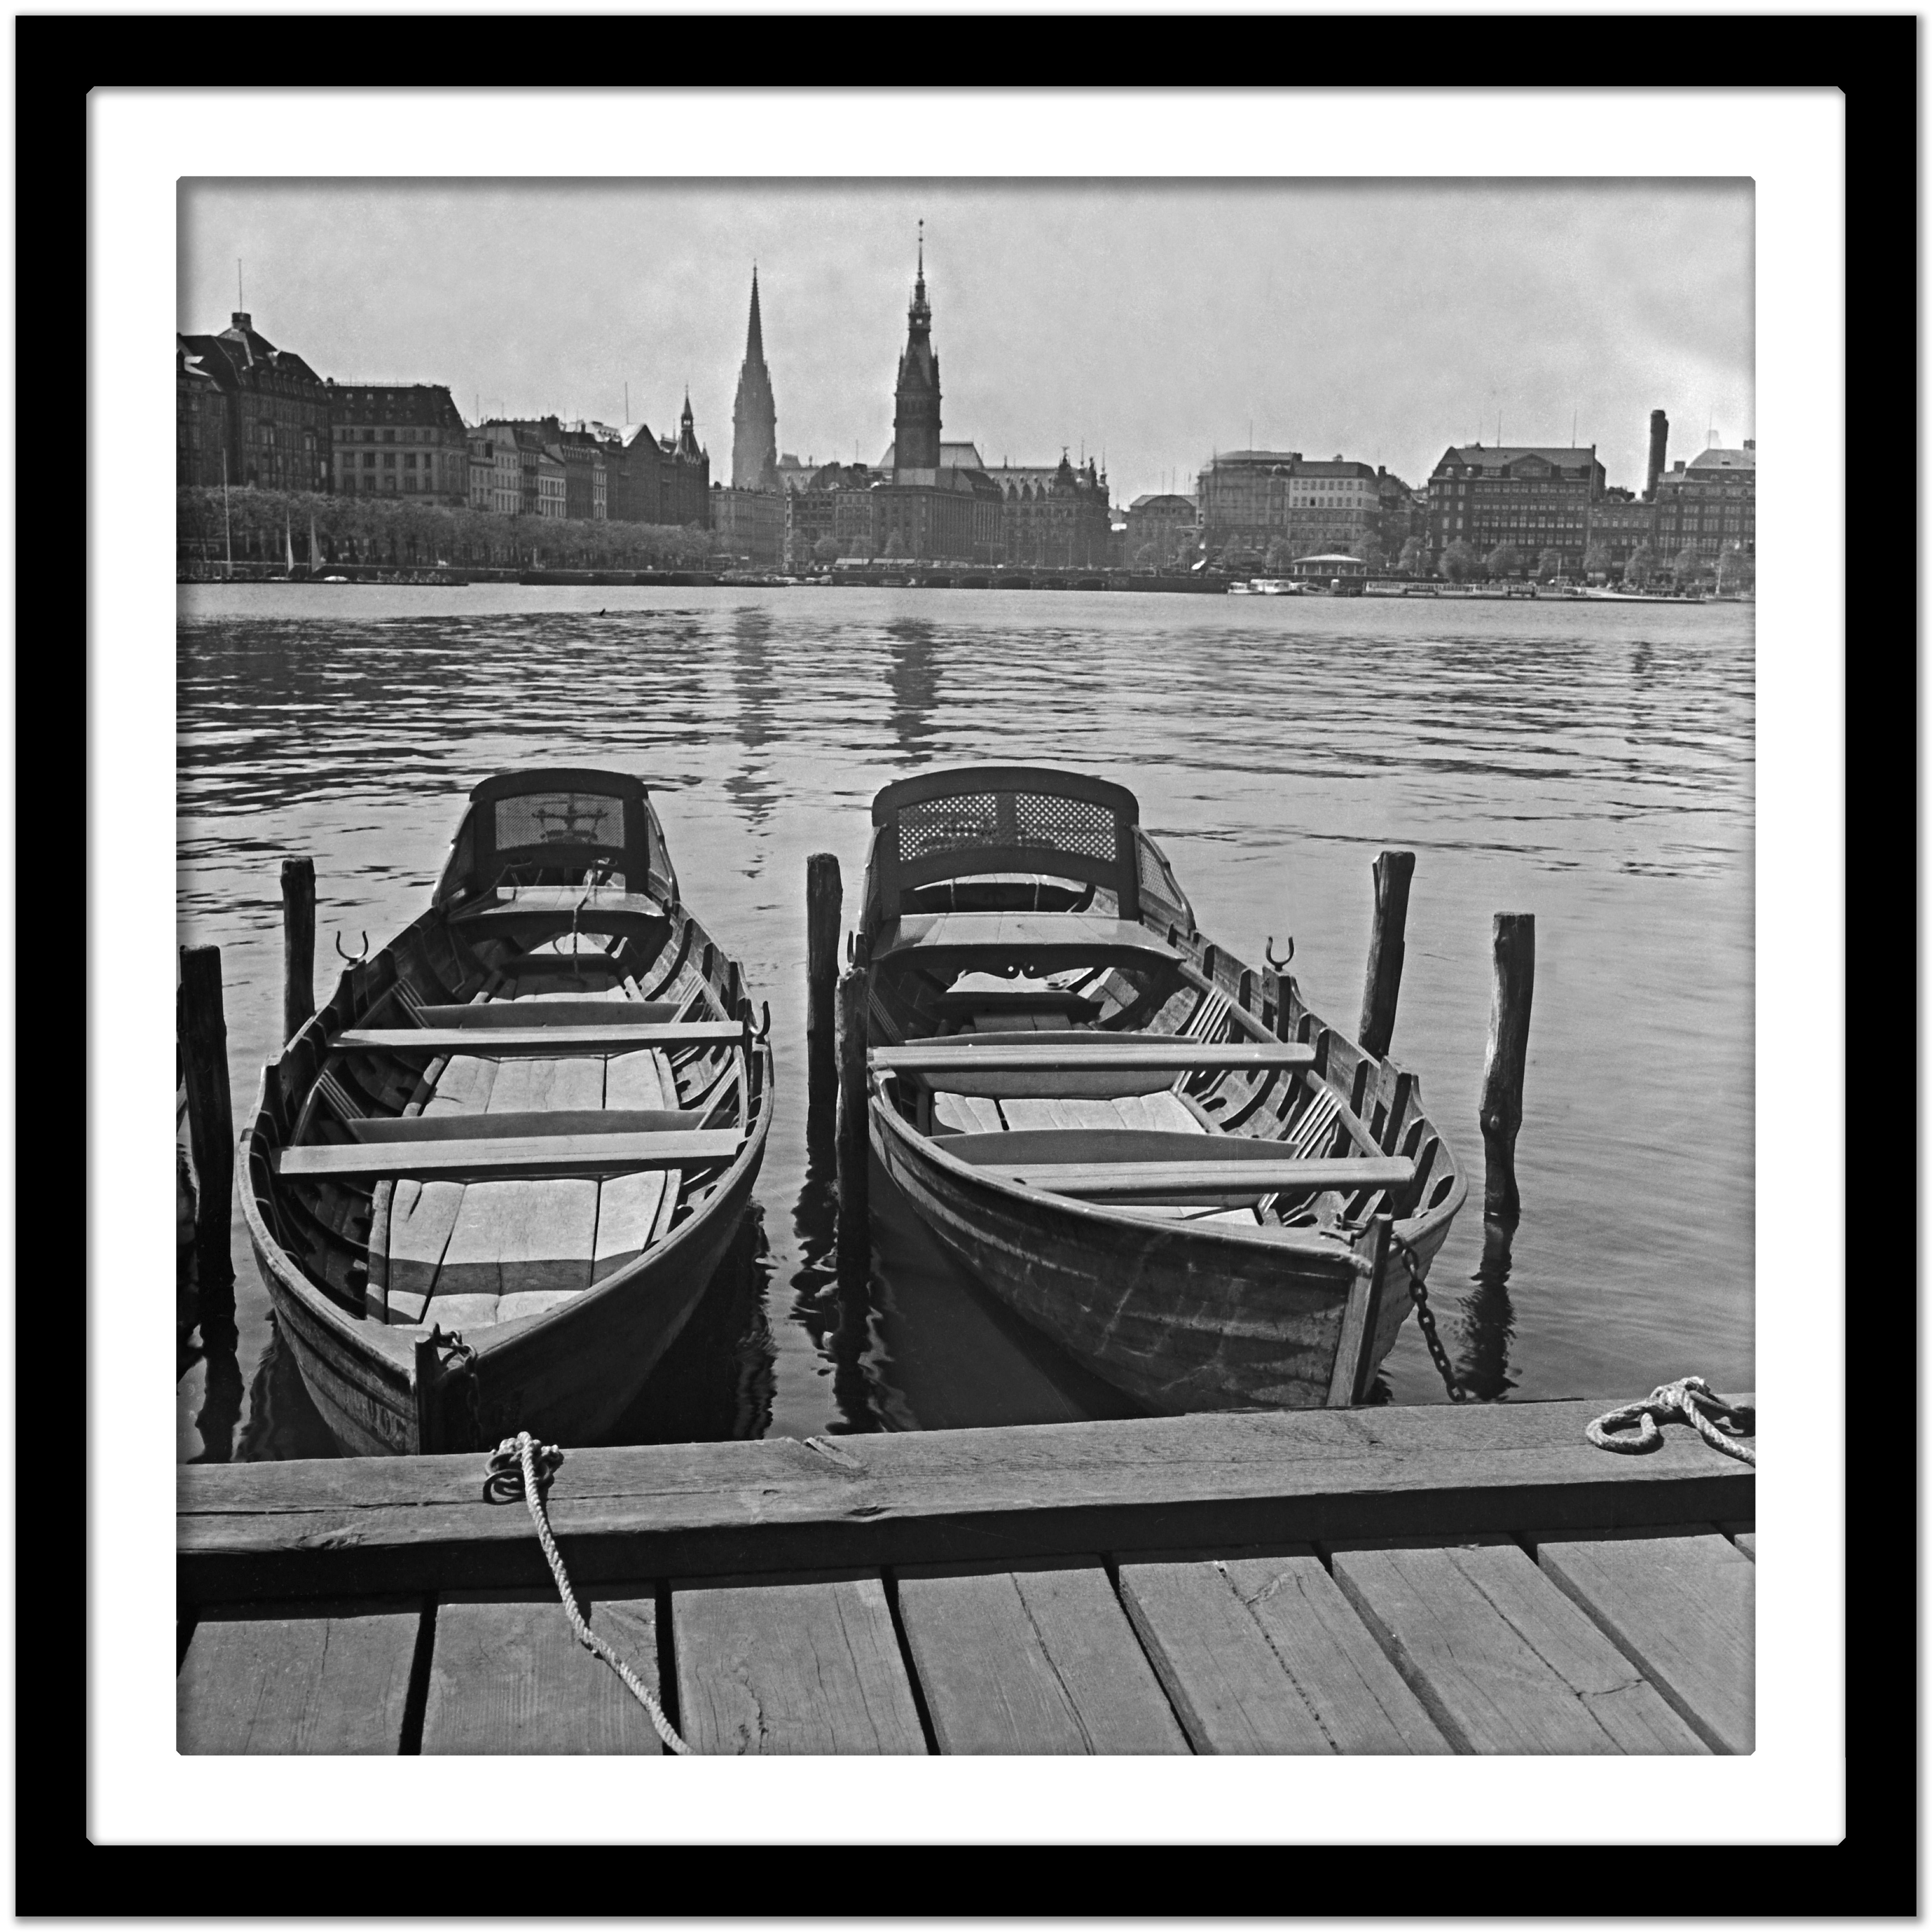 Boats am Heck auf Alster mit Blick auf das Stadthaus von Hamburg, Deutschland 1938, Später gedruckt  (Grau), Black and White Photograph, von Karl Heinrich Lämmel